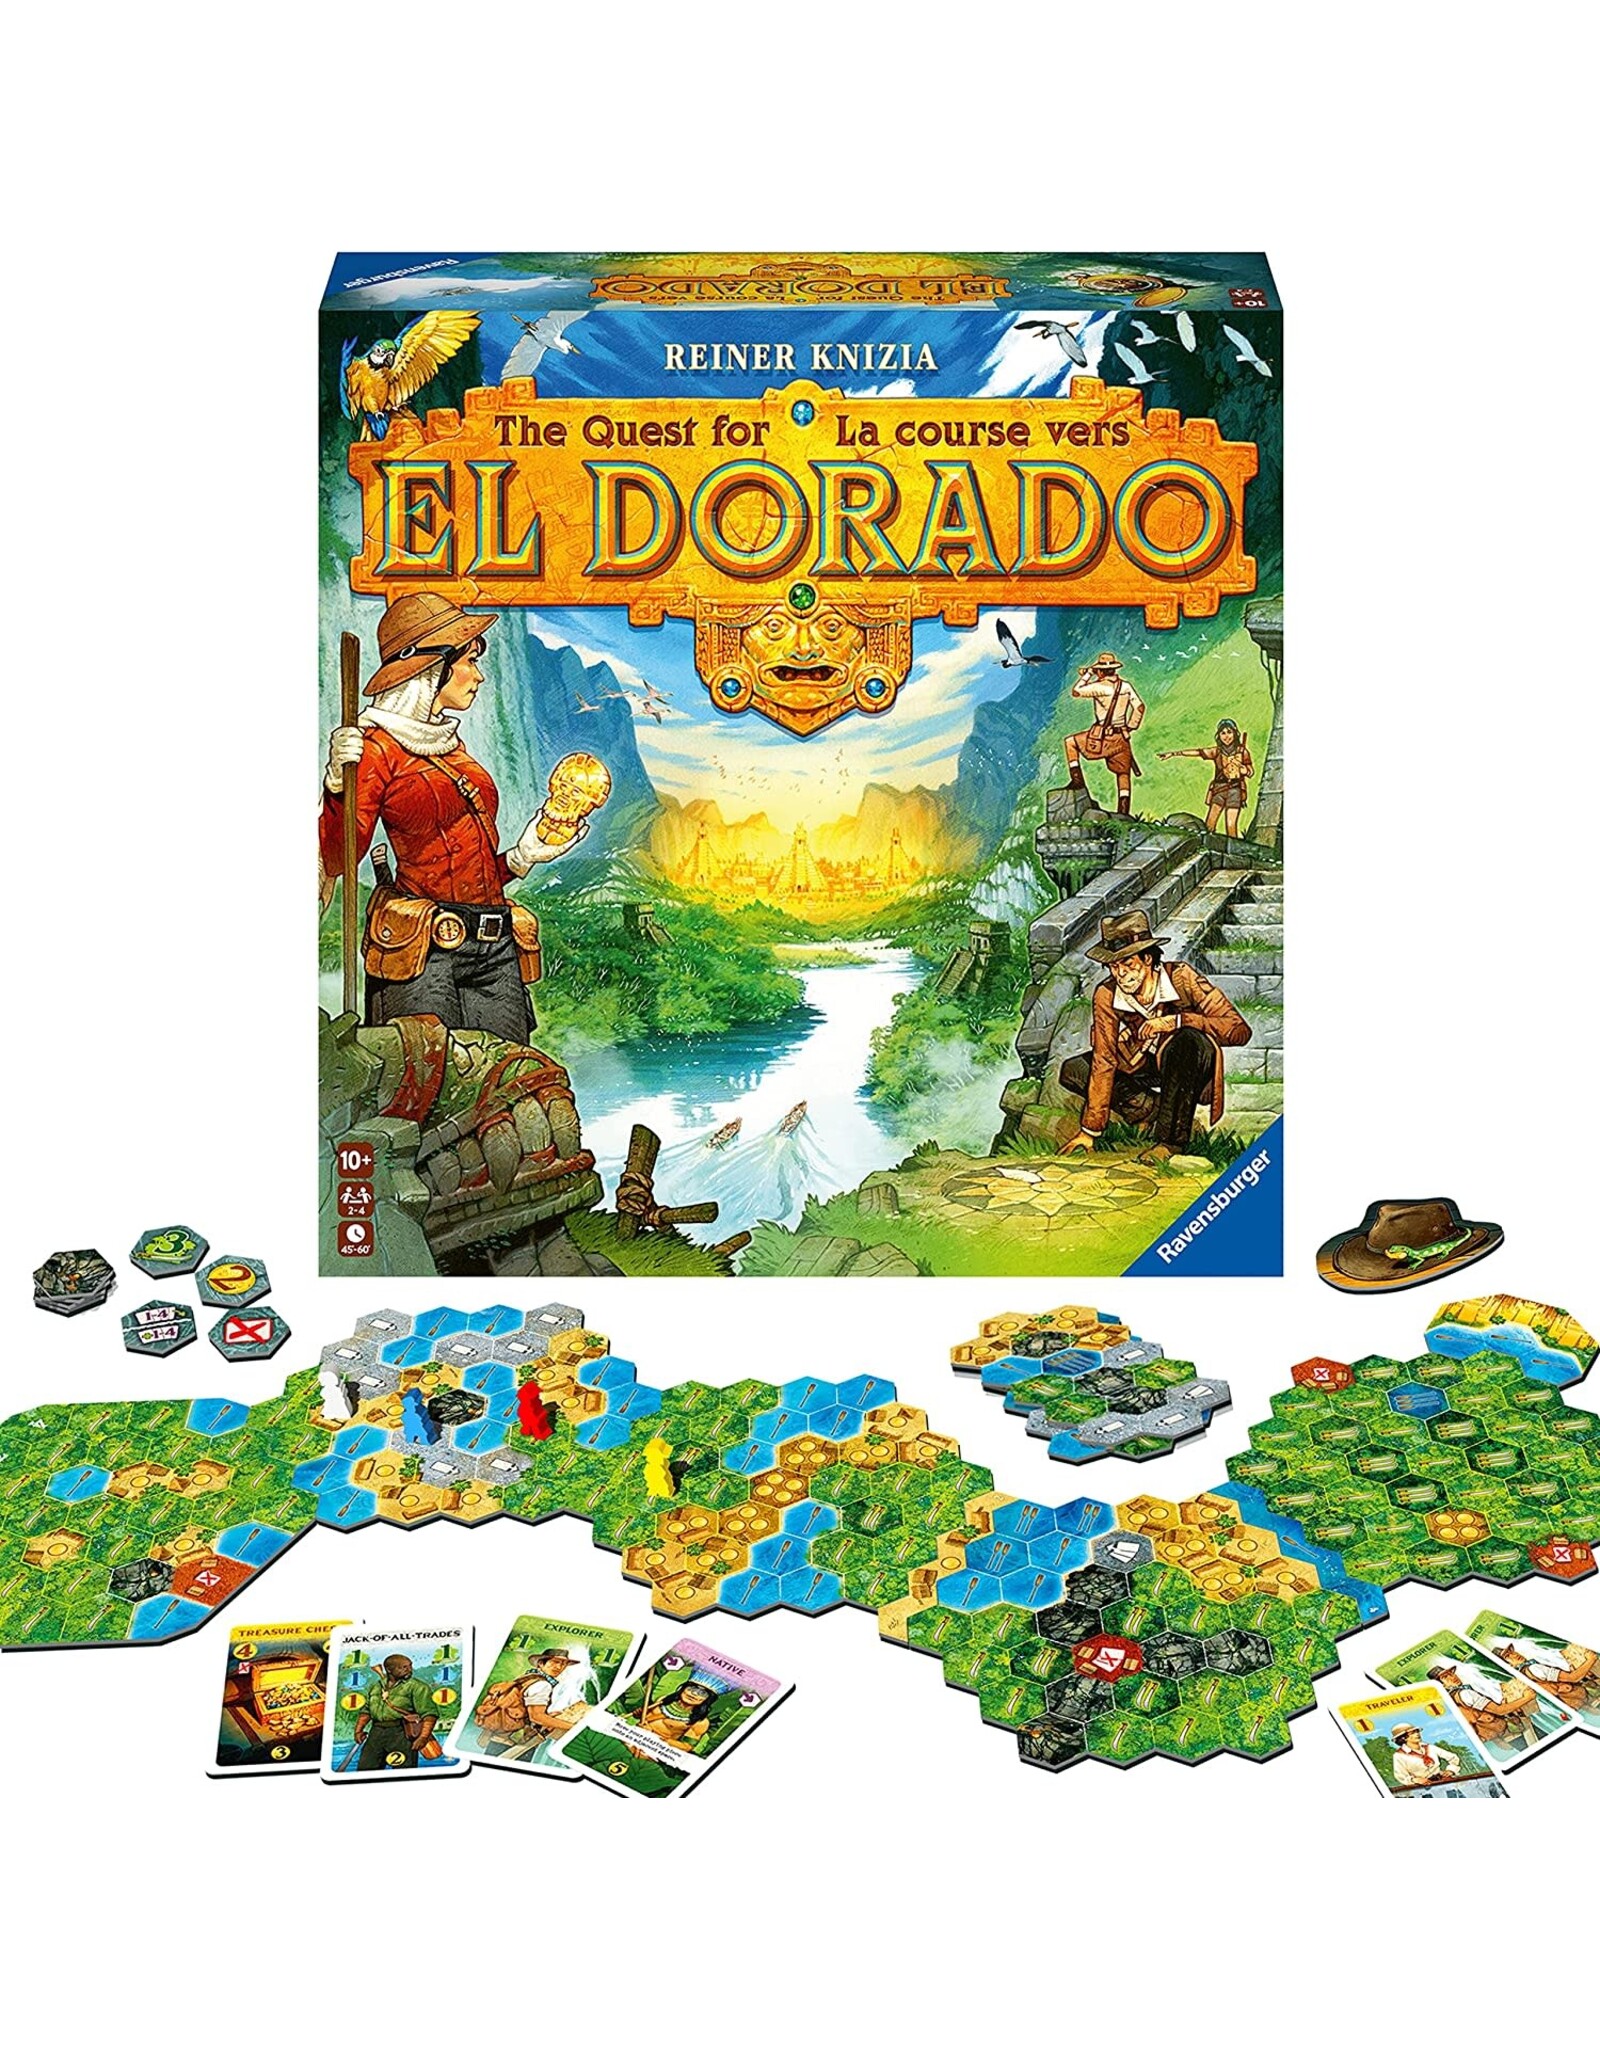 The Quest for El Dorado - Second Edition